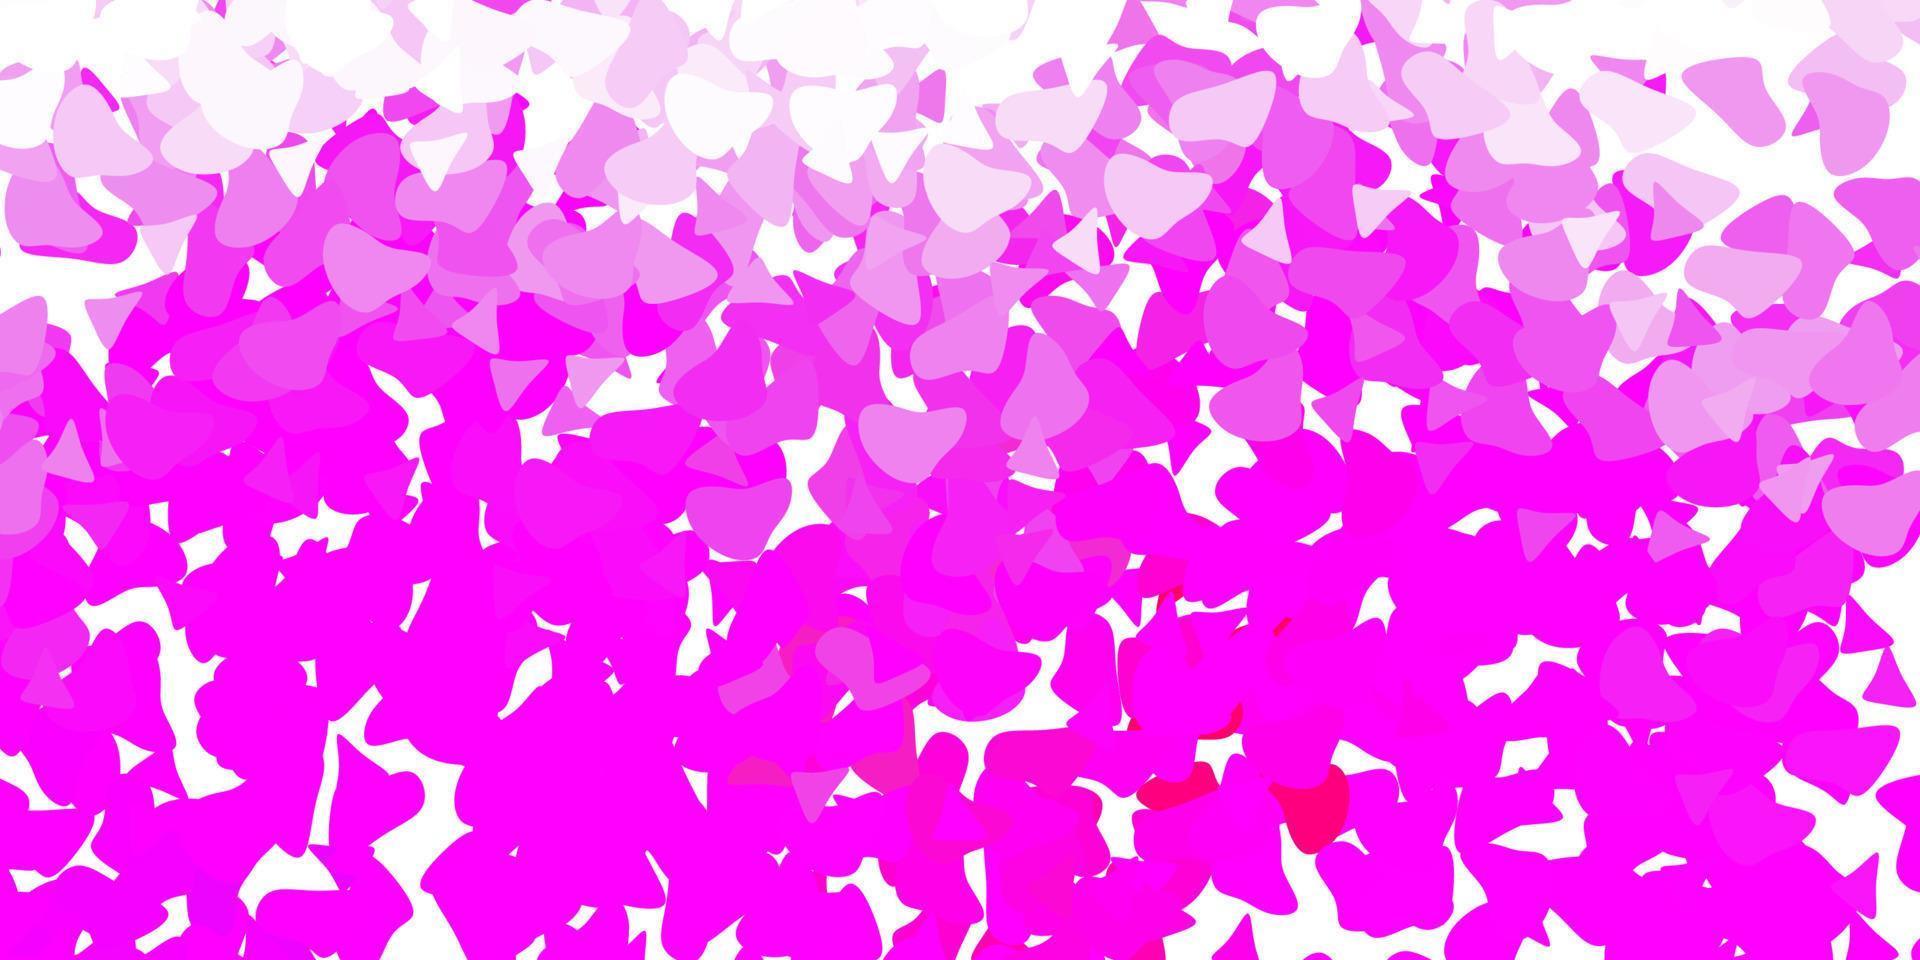 sfondo vettoriale viola chiaro, rosa con forme casuali.